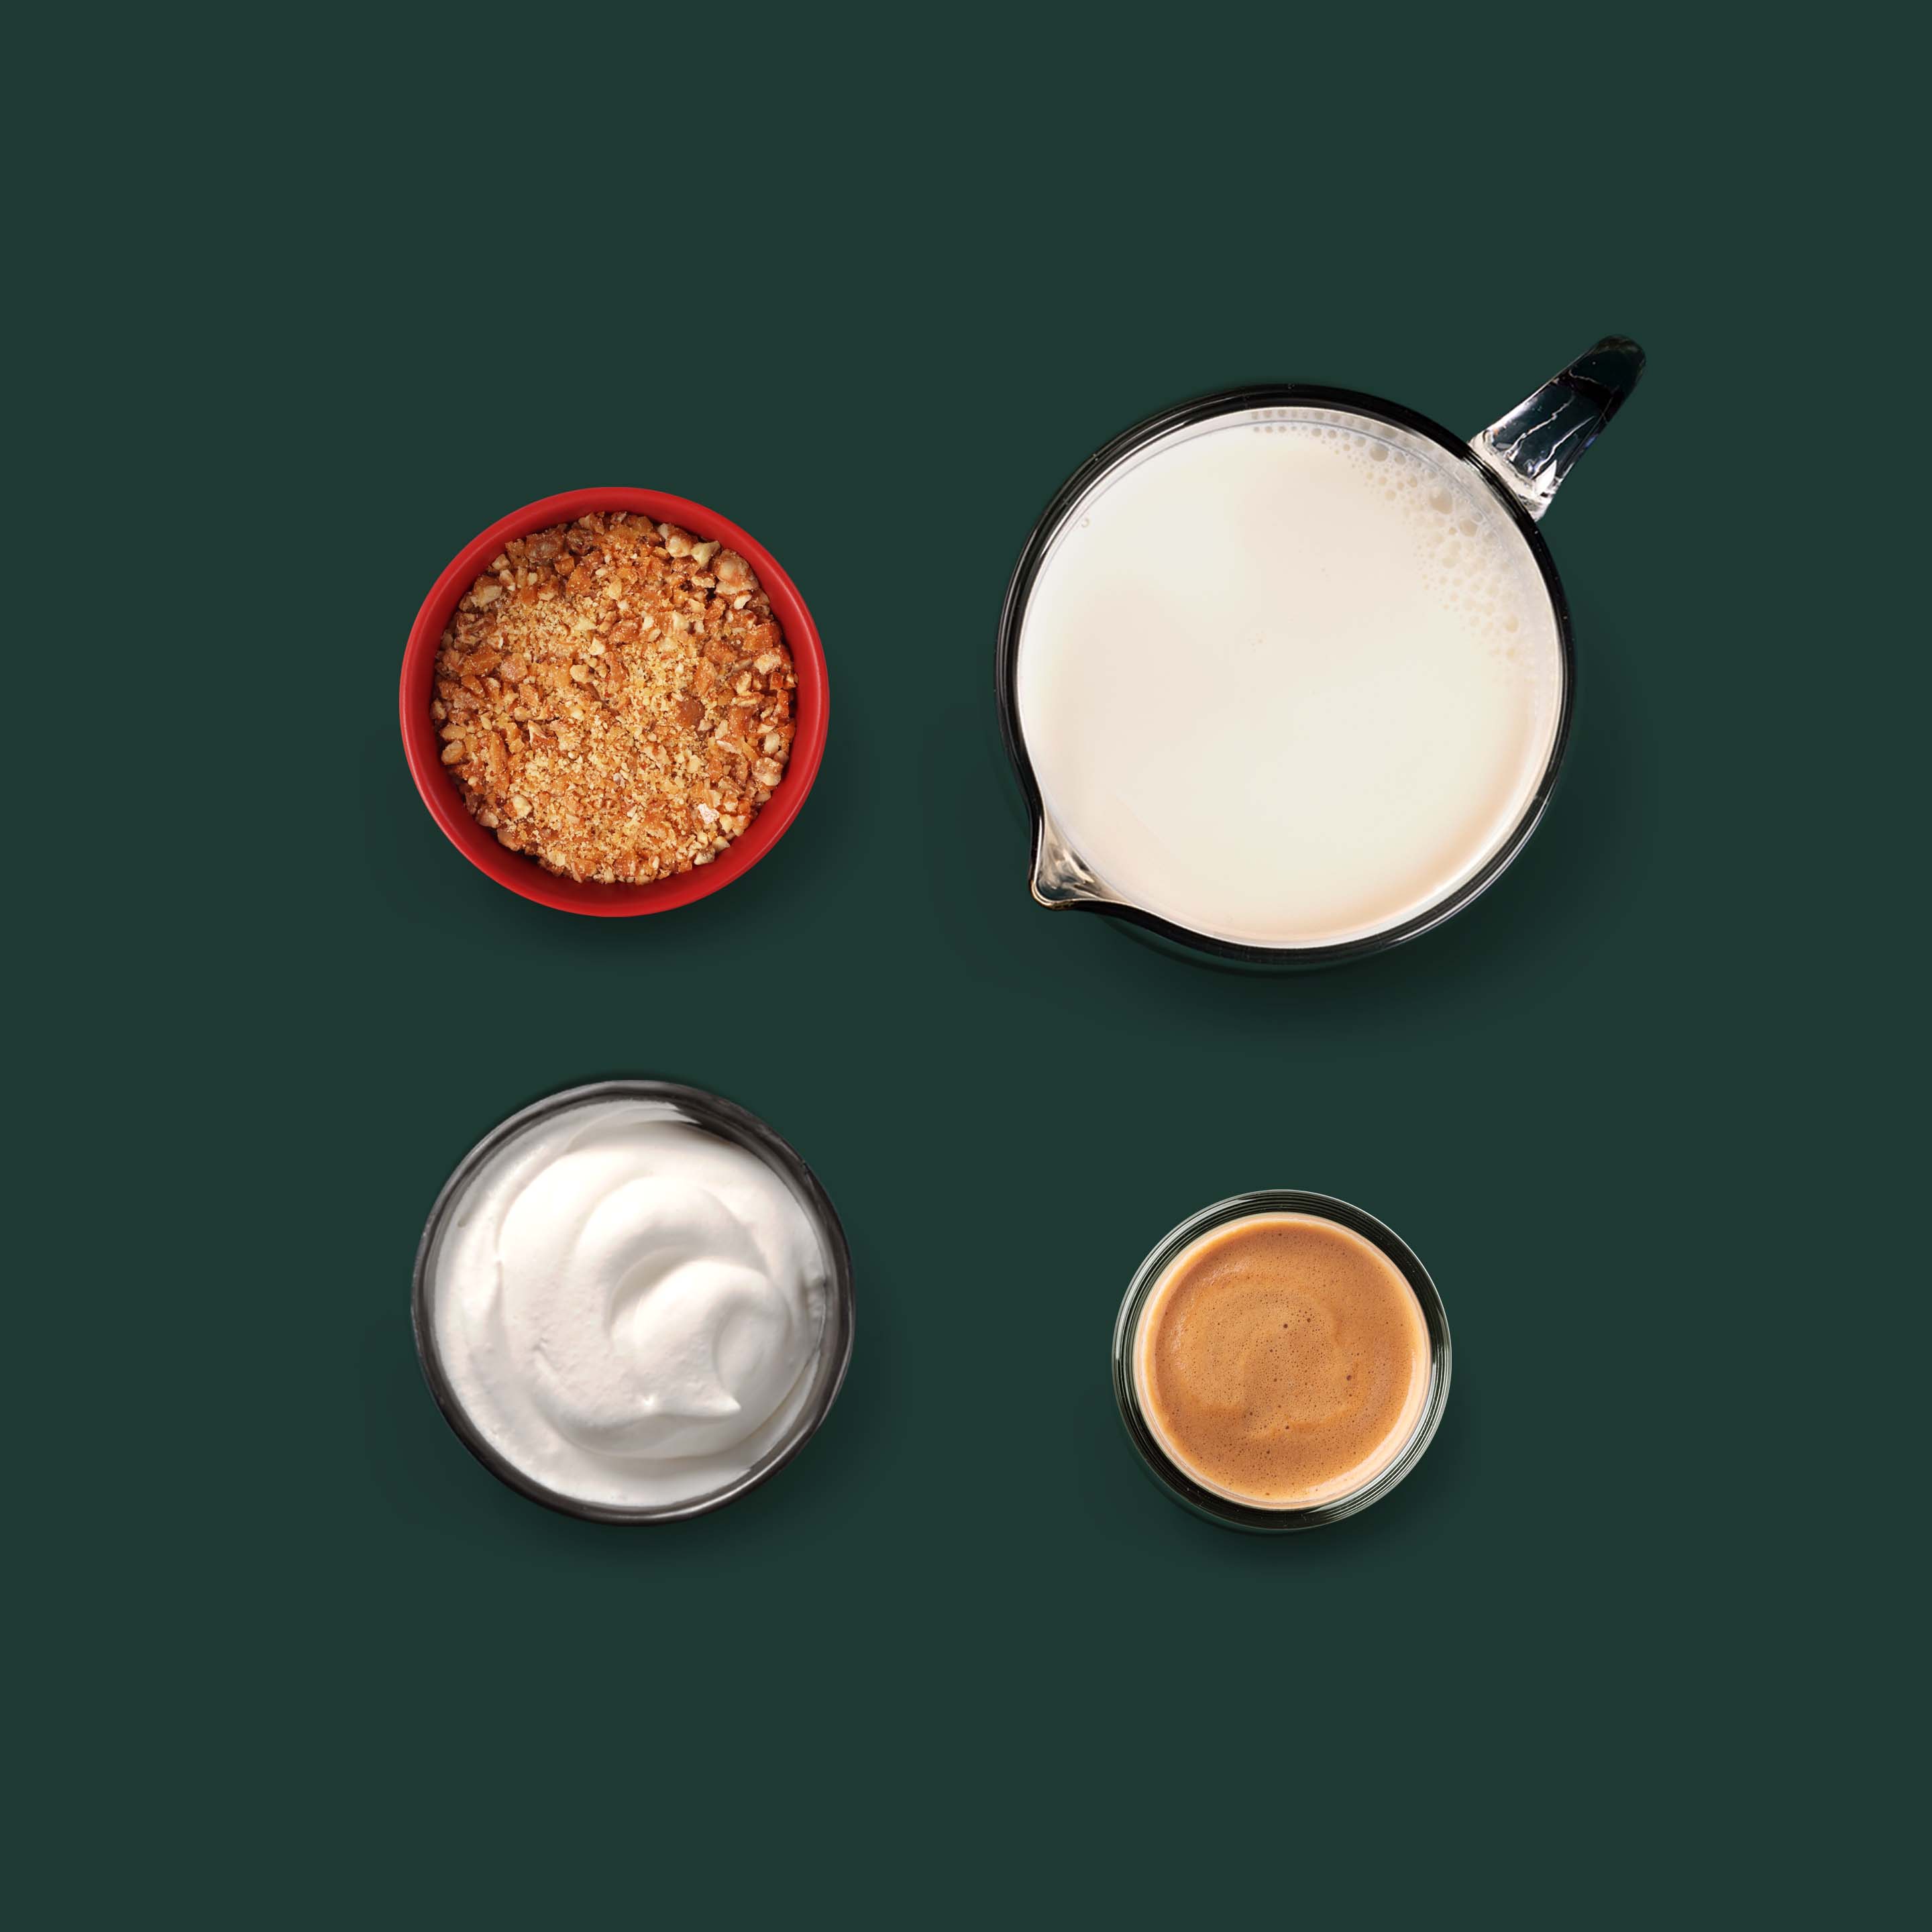 Toffee Nut Latte Ingredients